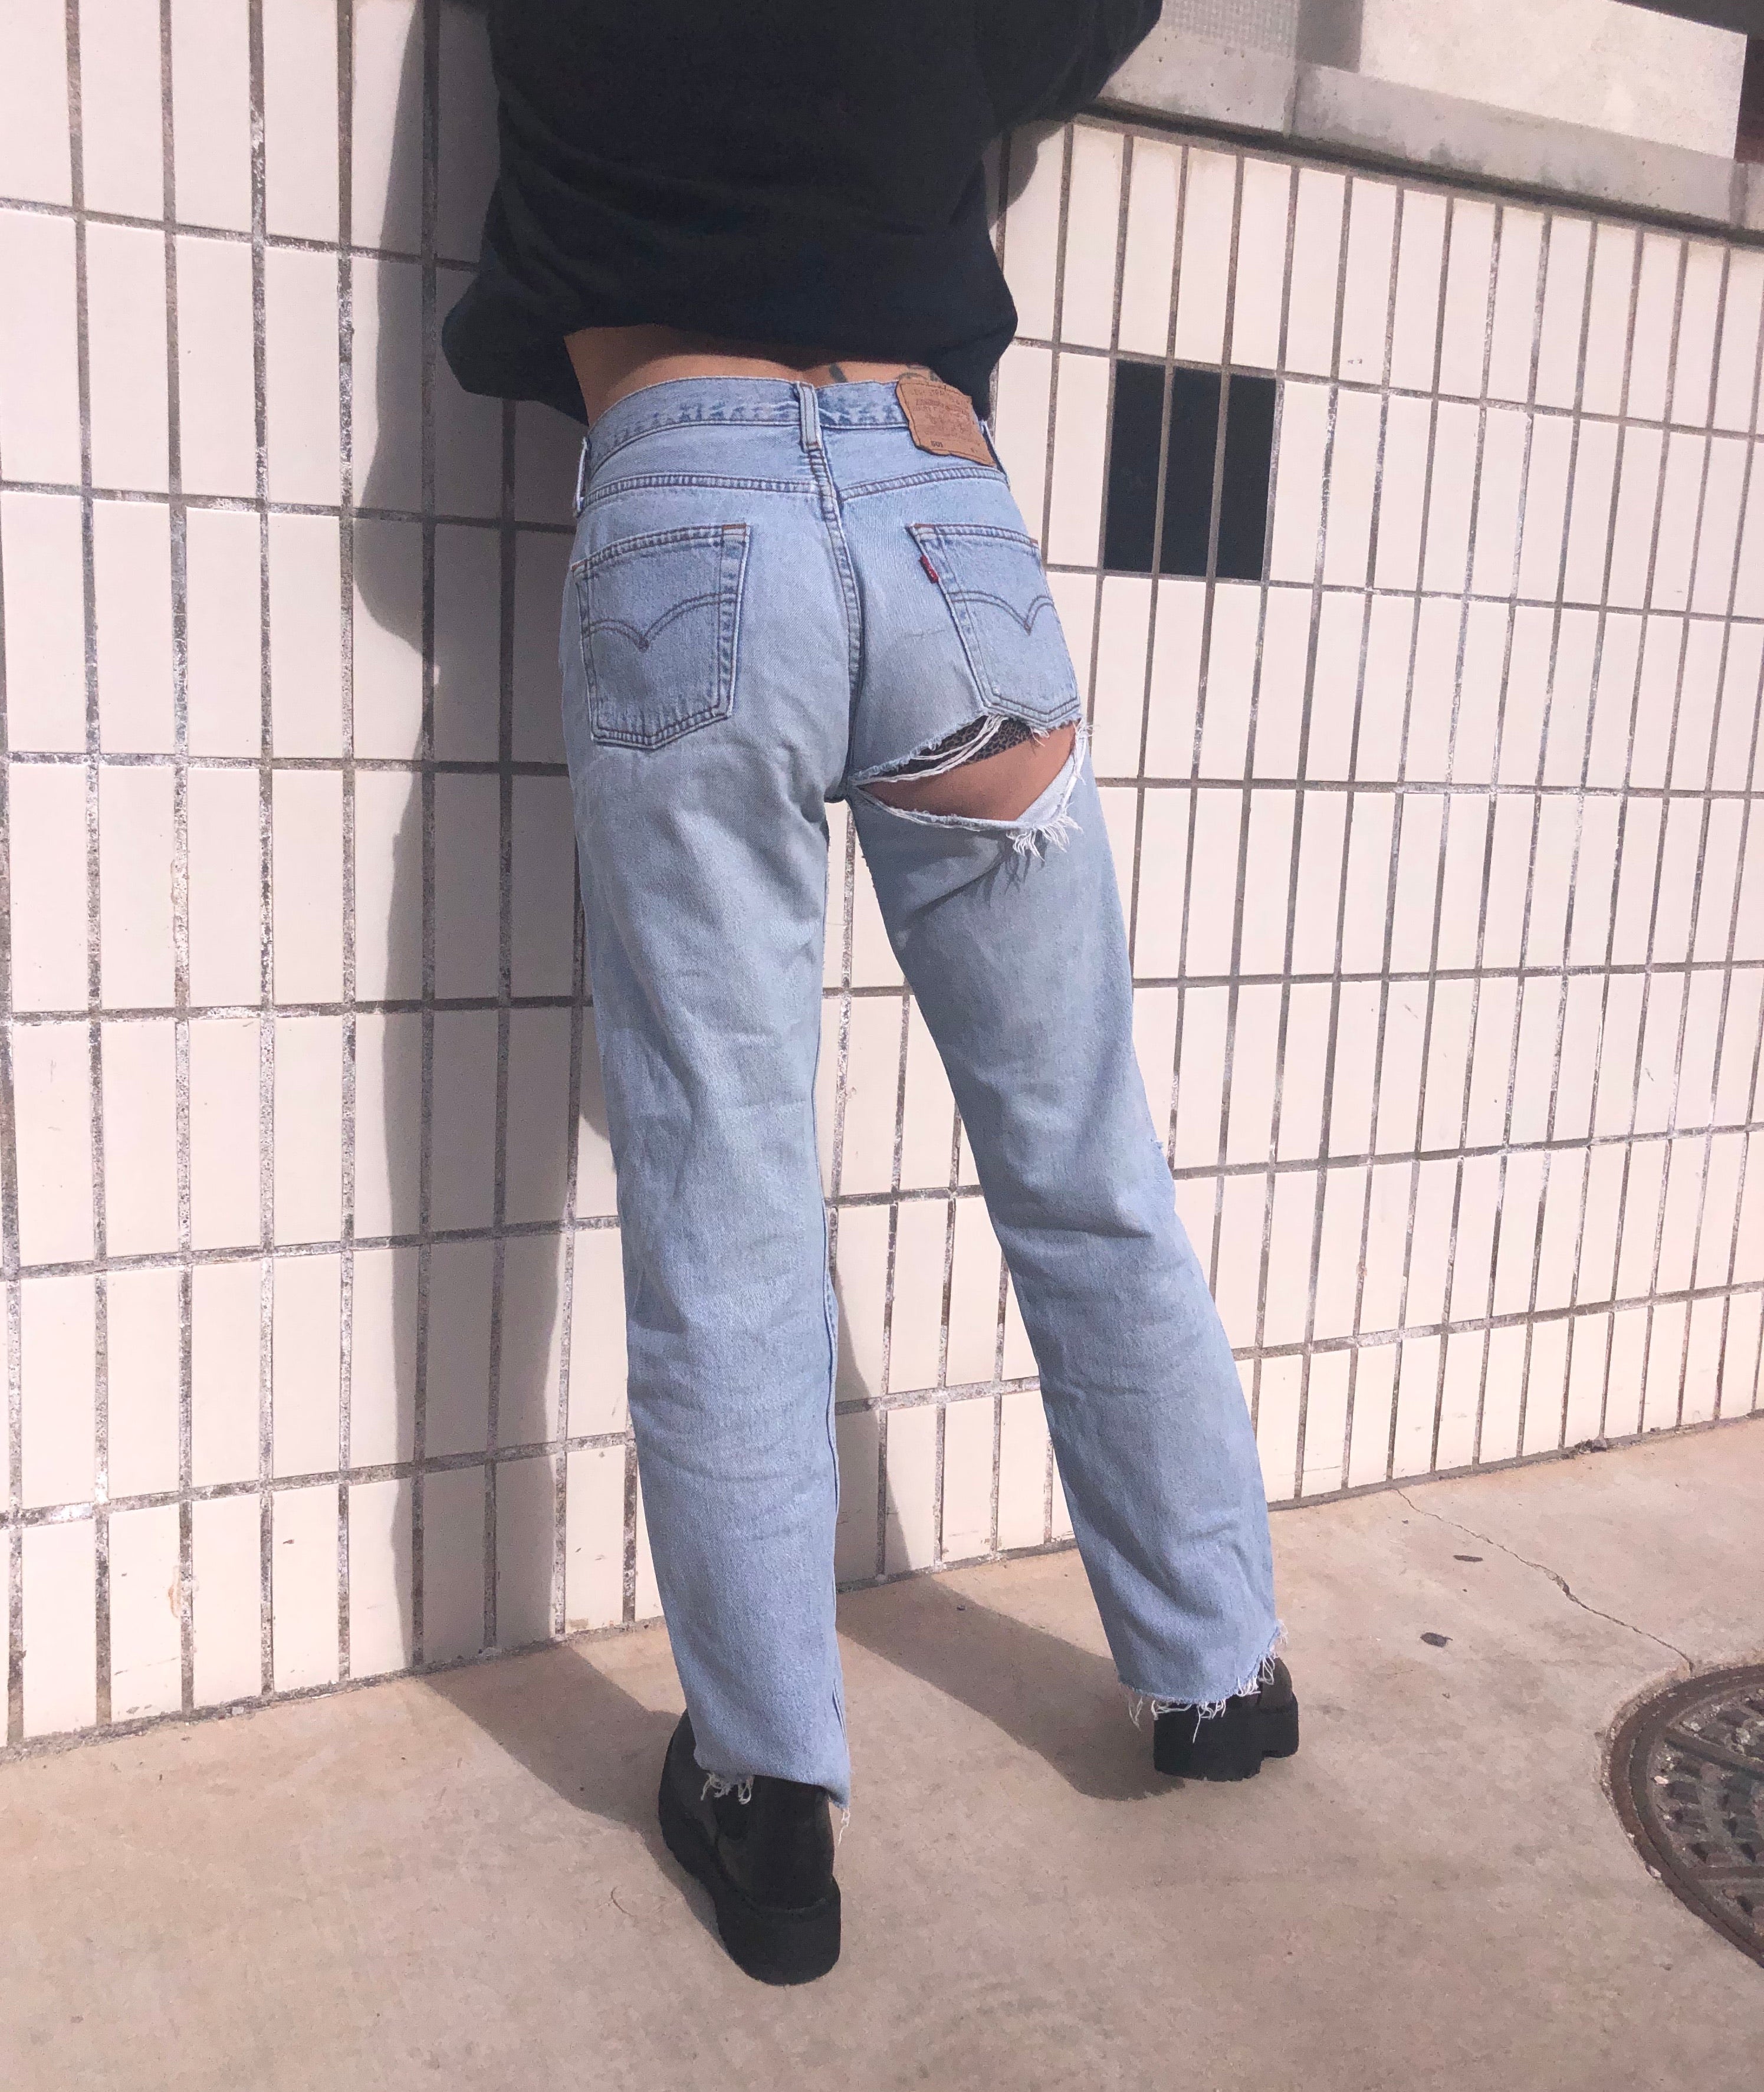 Descubrir 62+ imagen levi’s jeans with rip under bum